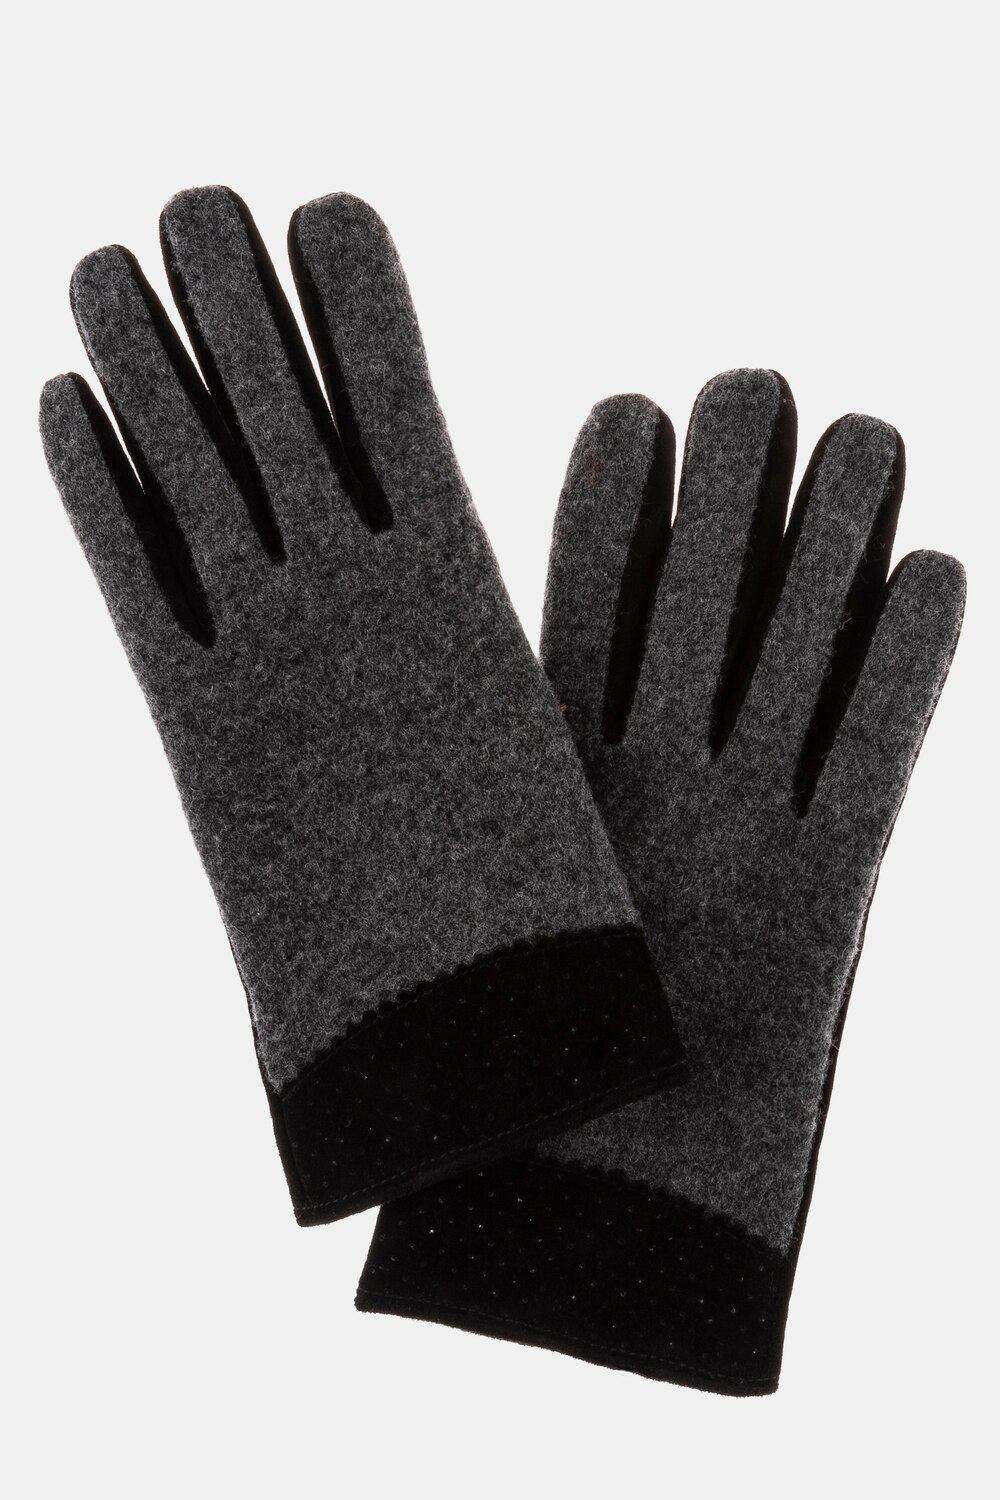 Grote Maten handschoenen, Dames, zwart, Maat: 42-48, Leer/Wol, Ulla Popken